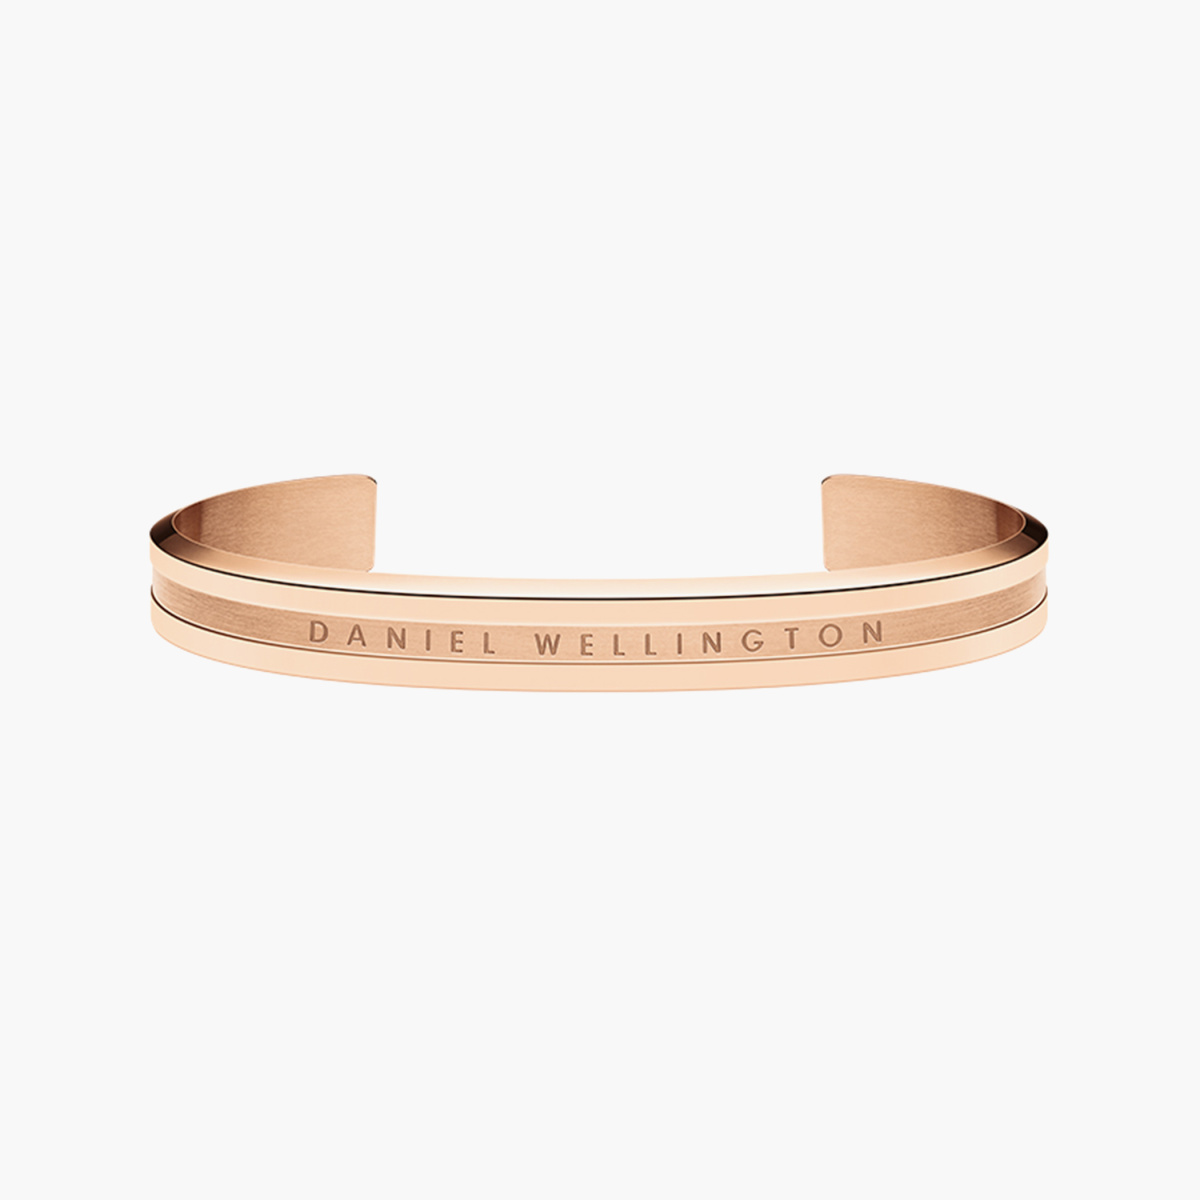 Buy Silvertoned Bracelets  Bangles for Women by Jewels Galaxy Online   Ajiocom